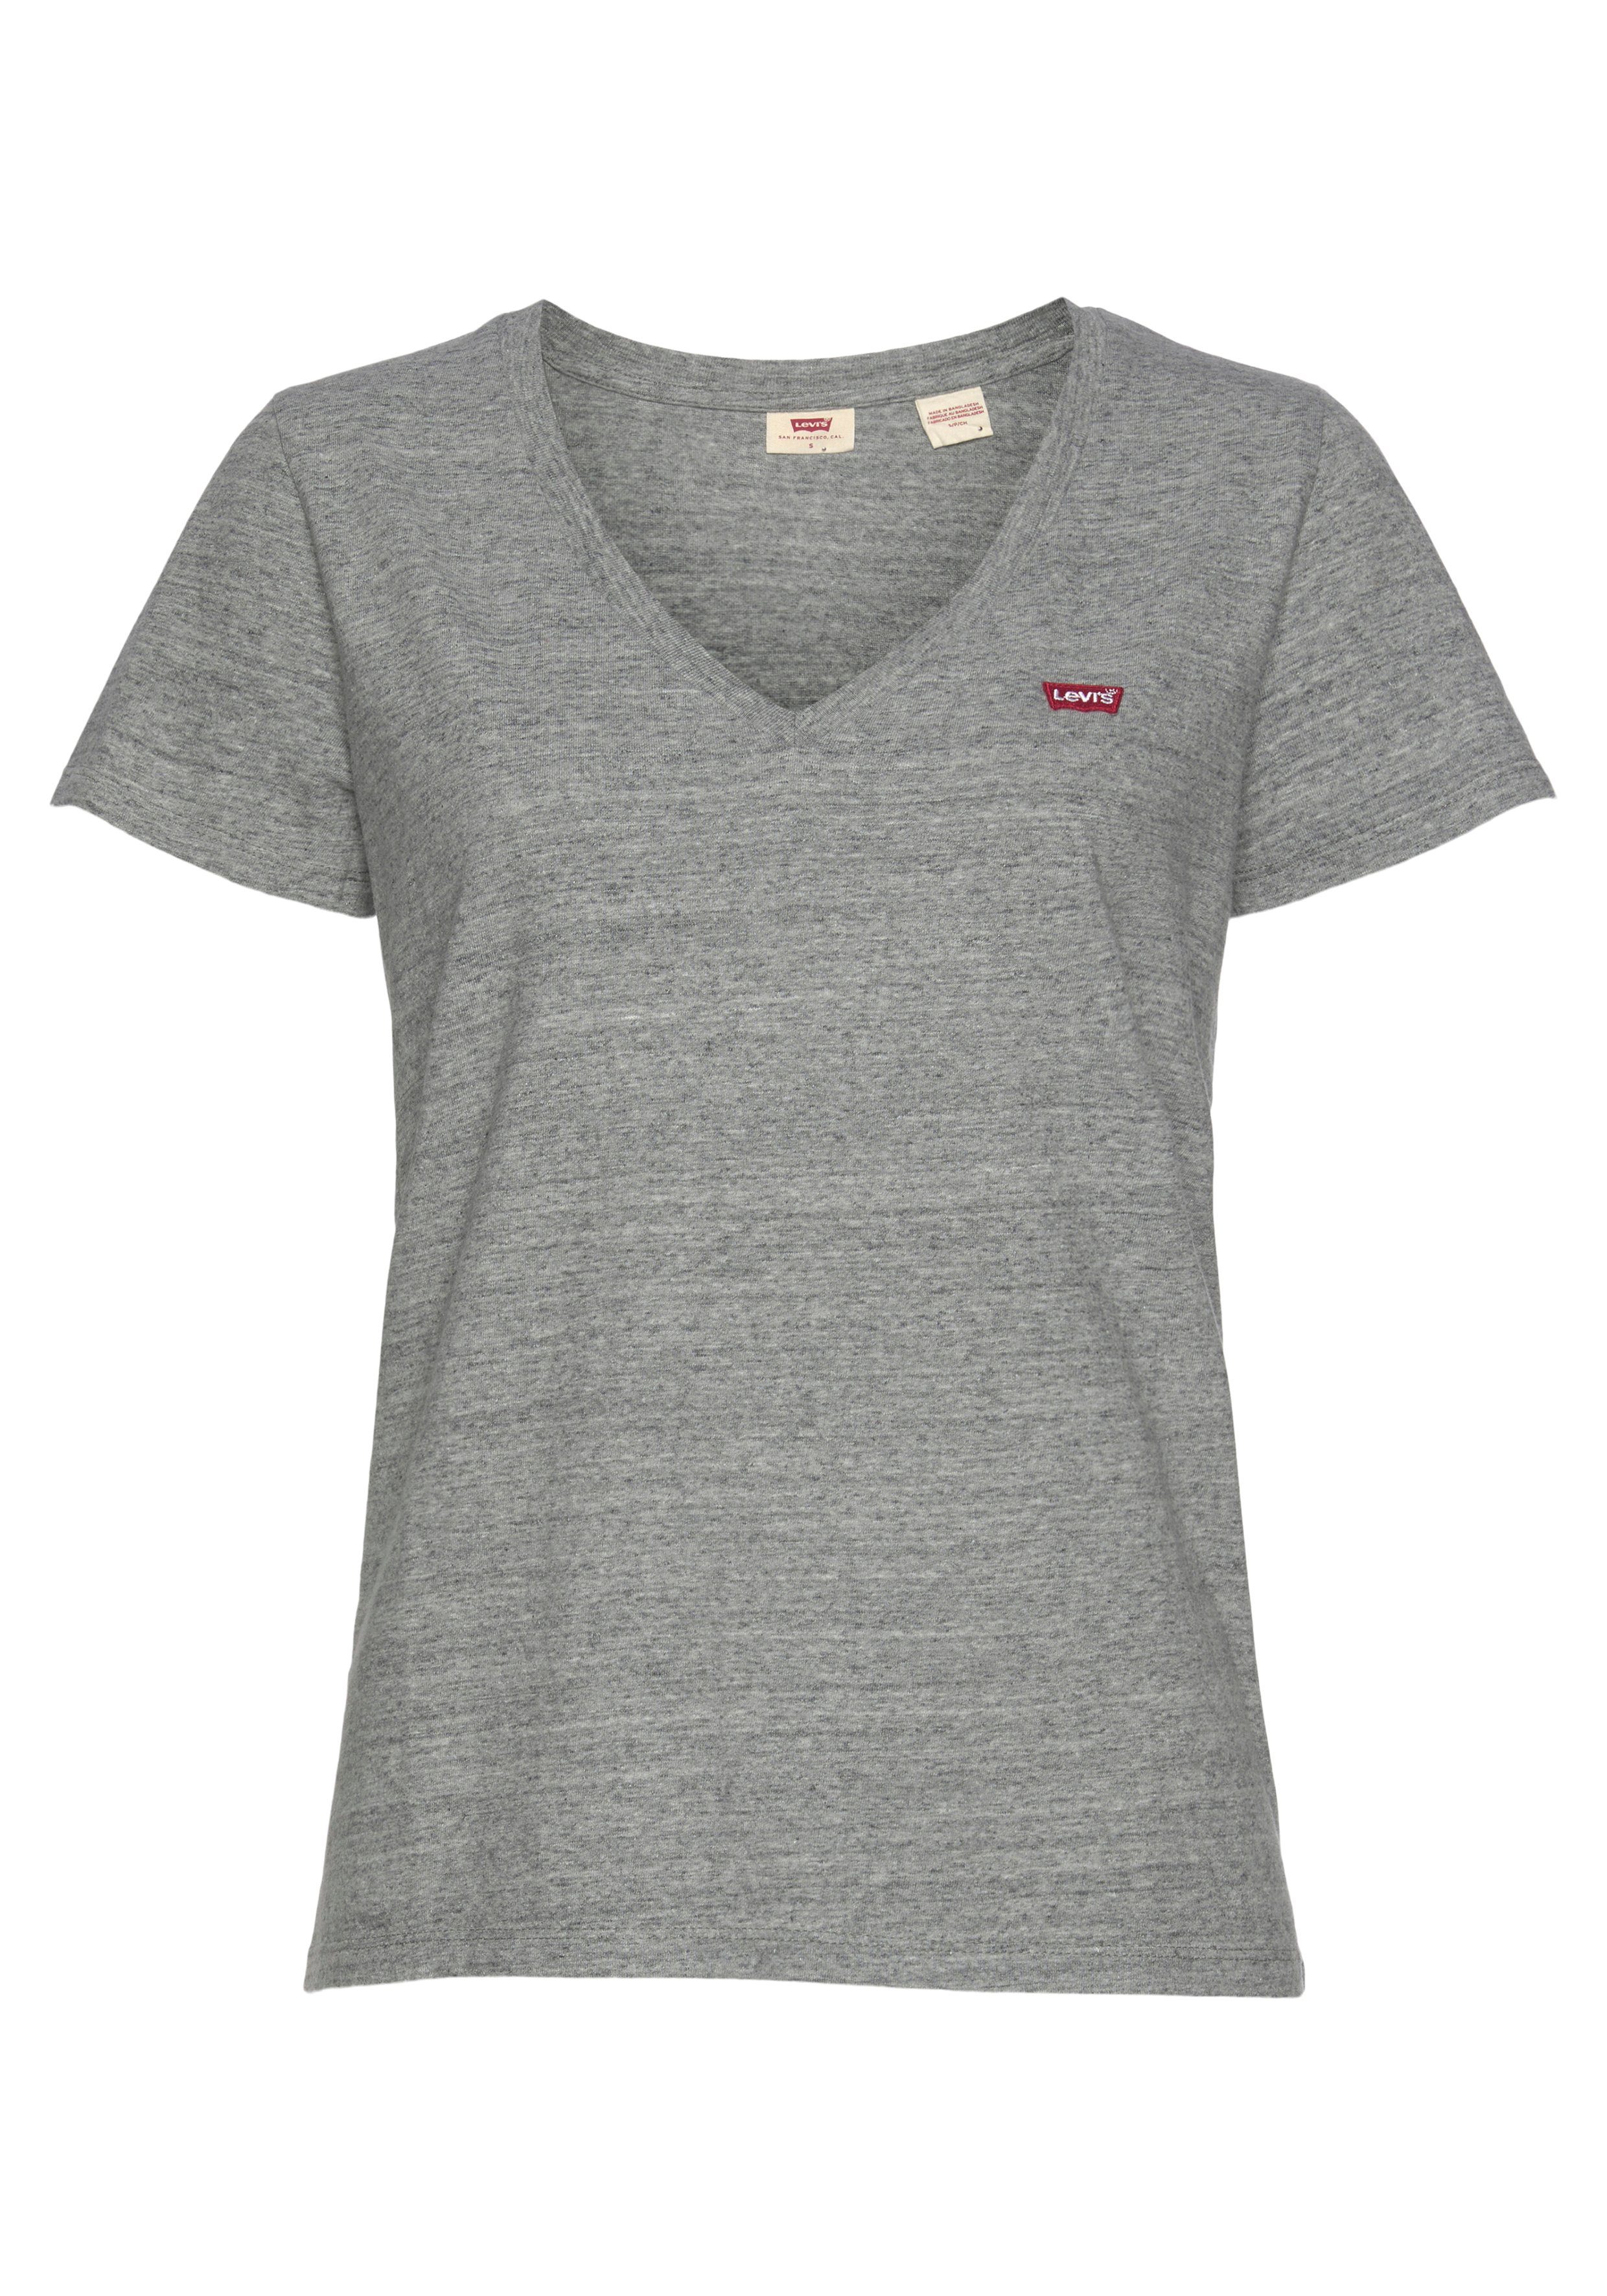 Levi's® T-Shirt grau-meliert weiß